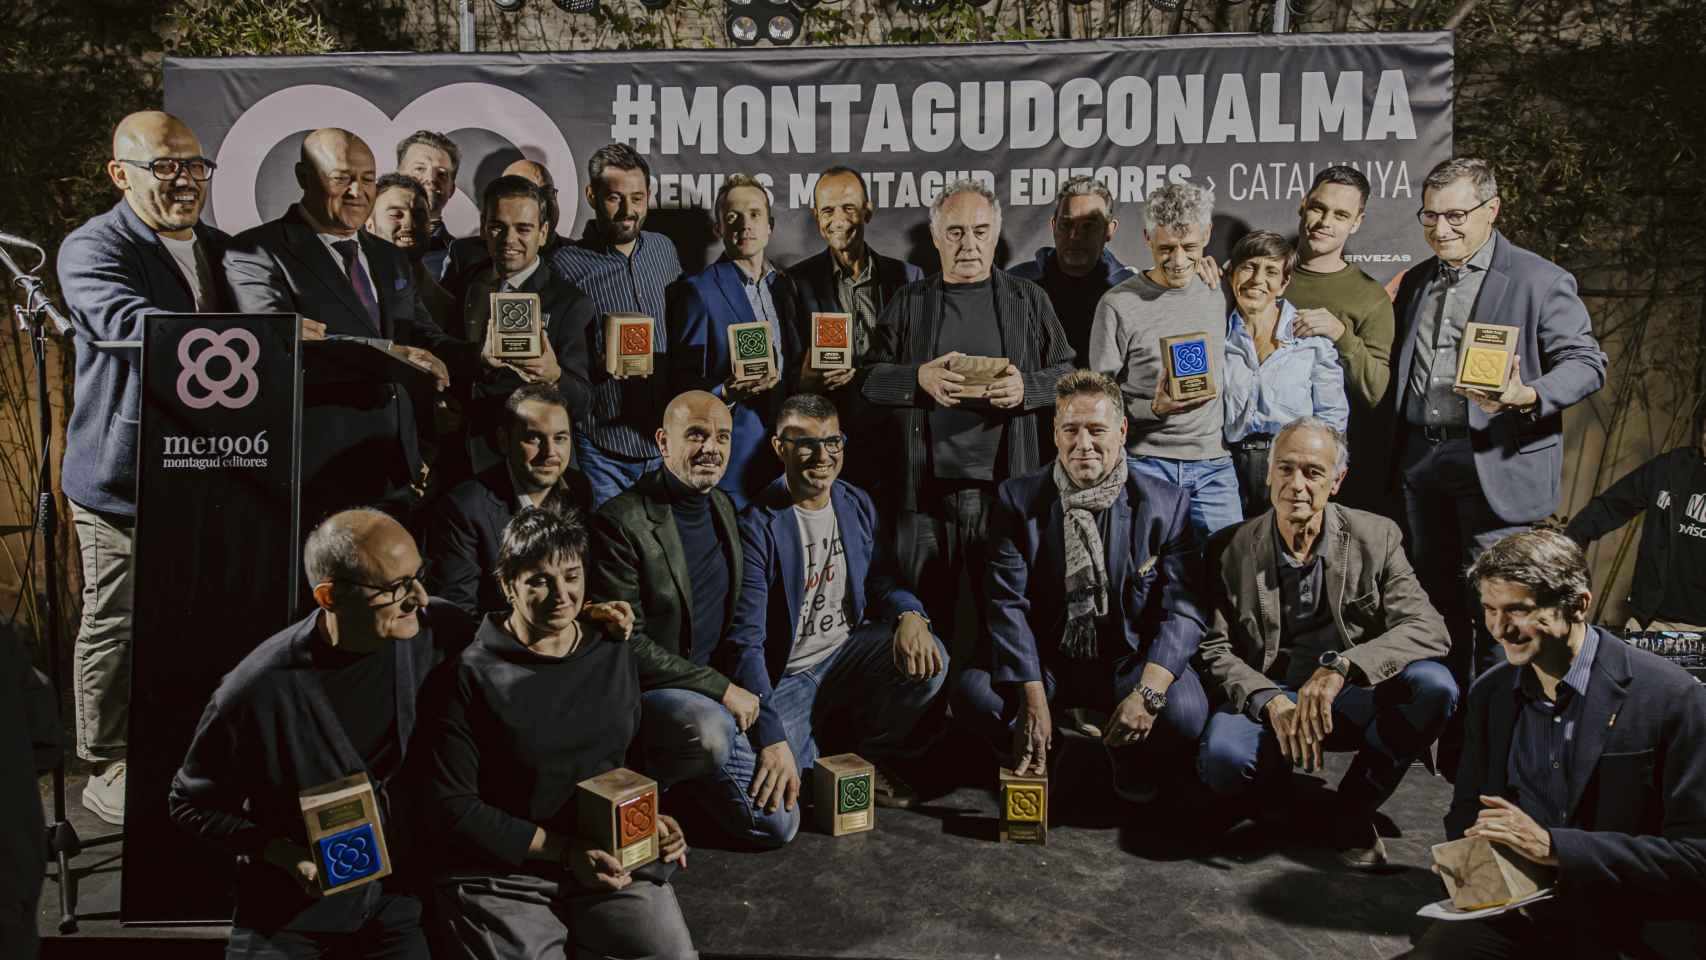 El talento gastronómico de Cataluña está de celebración: Pitu Roca, Lasarte y Brabo, entre los premiados